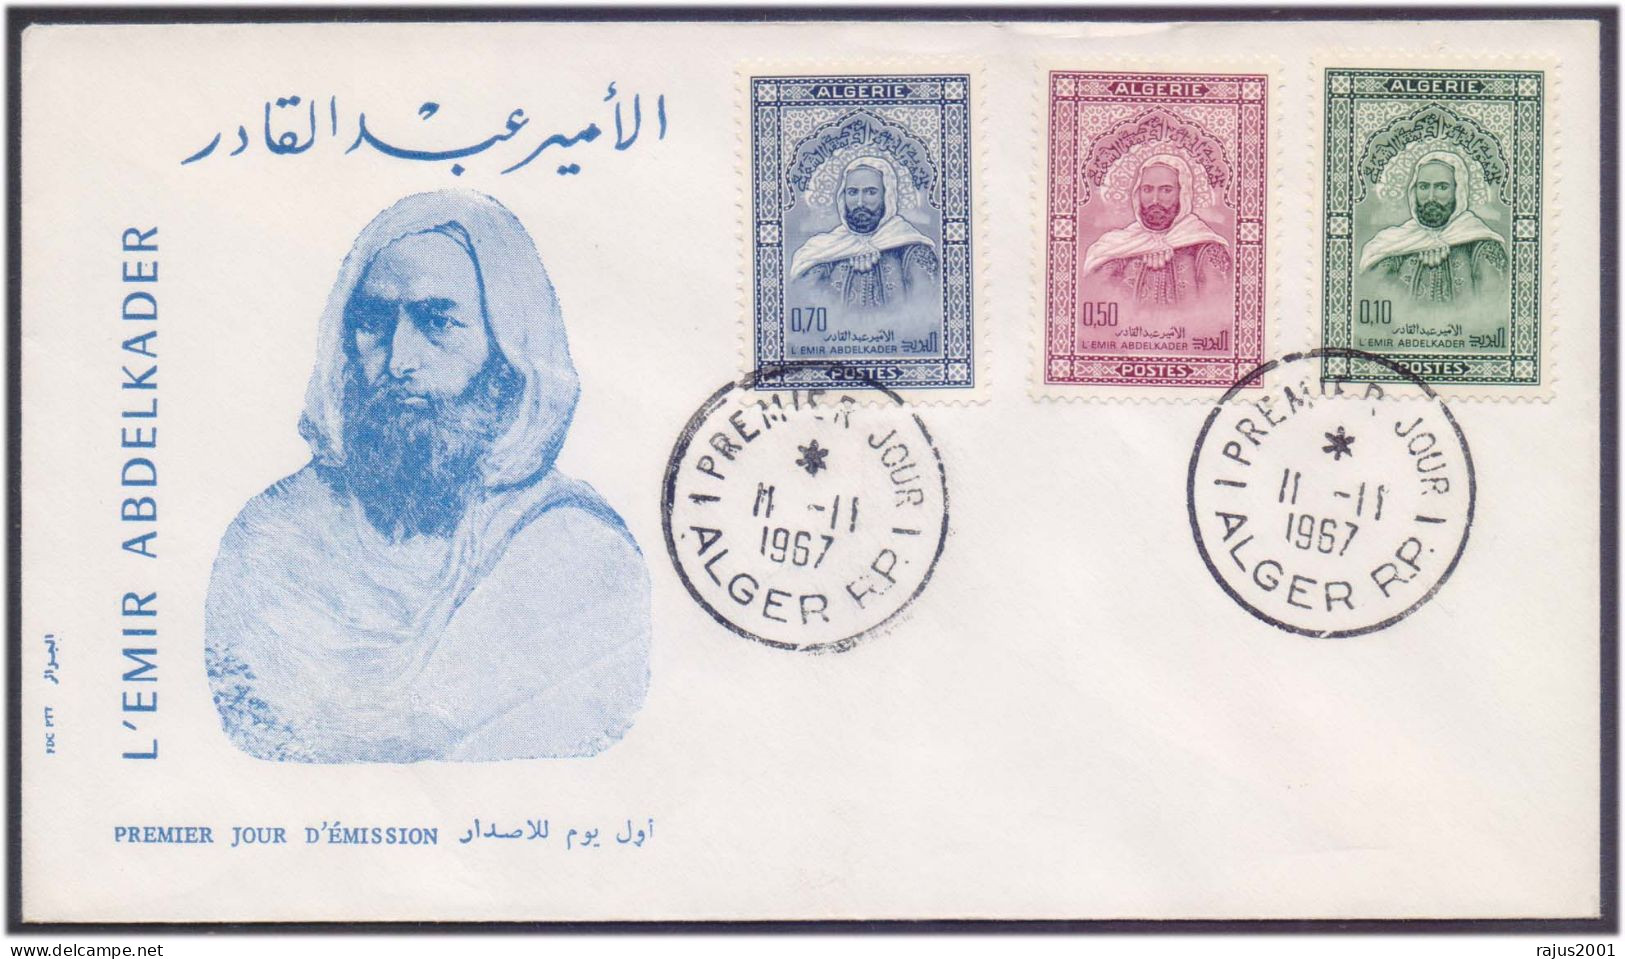 Emir Abdelkader, Amir Abdel Kader Introduces Freemasonry In Muslim World Admitted To Grand Orient In 1864 FDC Algeria - Freimaurerei